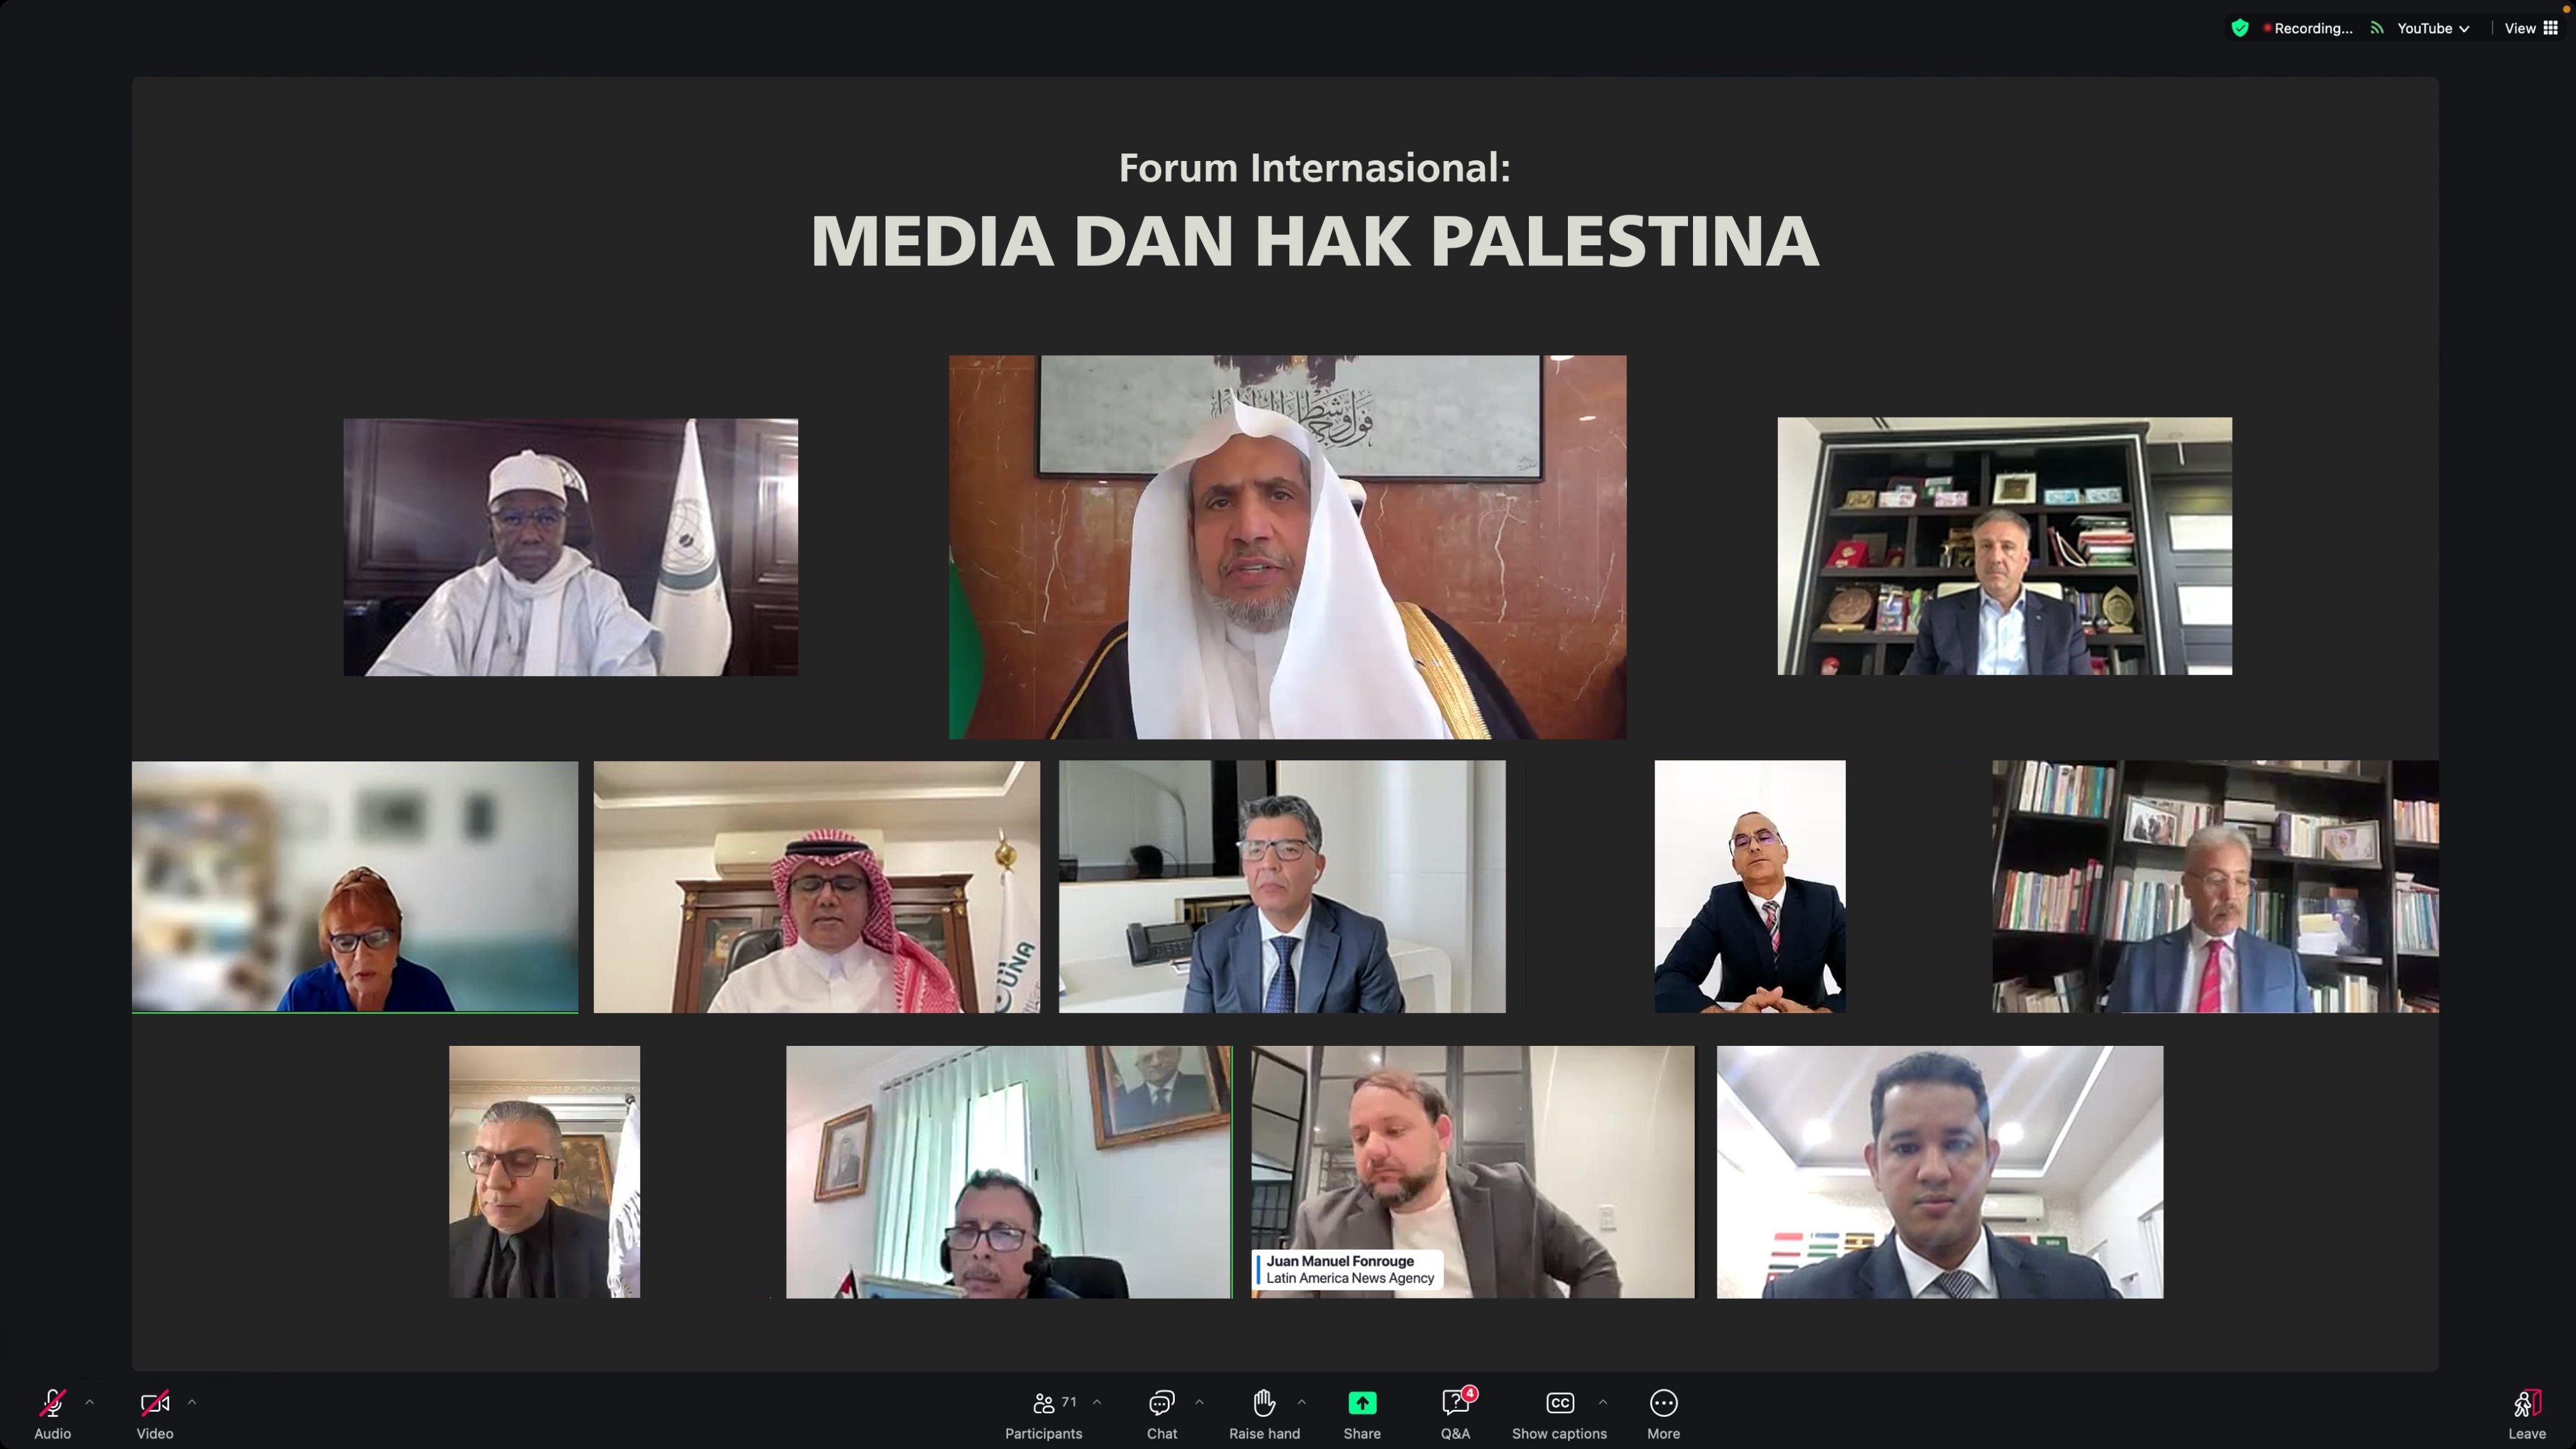 Sedang berlangsung: Peluncuran Forum Internasional: “Media dan Hak Palestina.. berfokus pada langkah-langkah praktis untuk membangun inisiatif pengakuan Palestina”